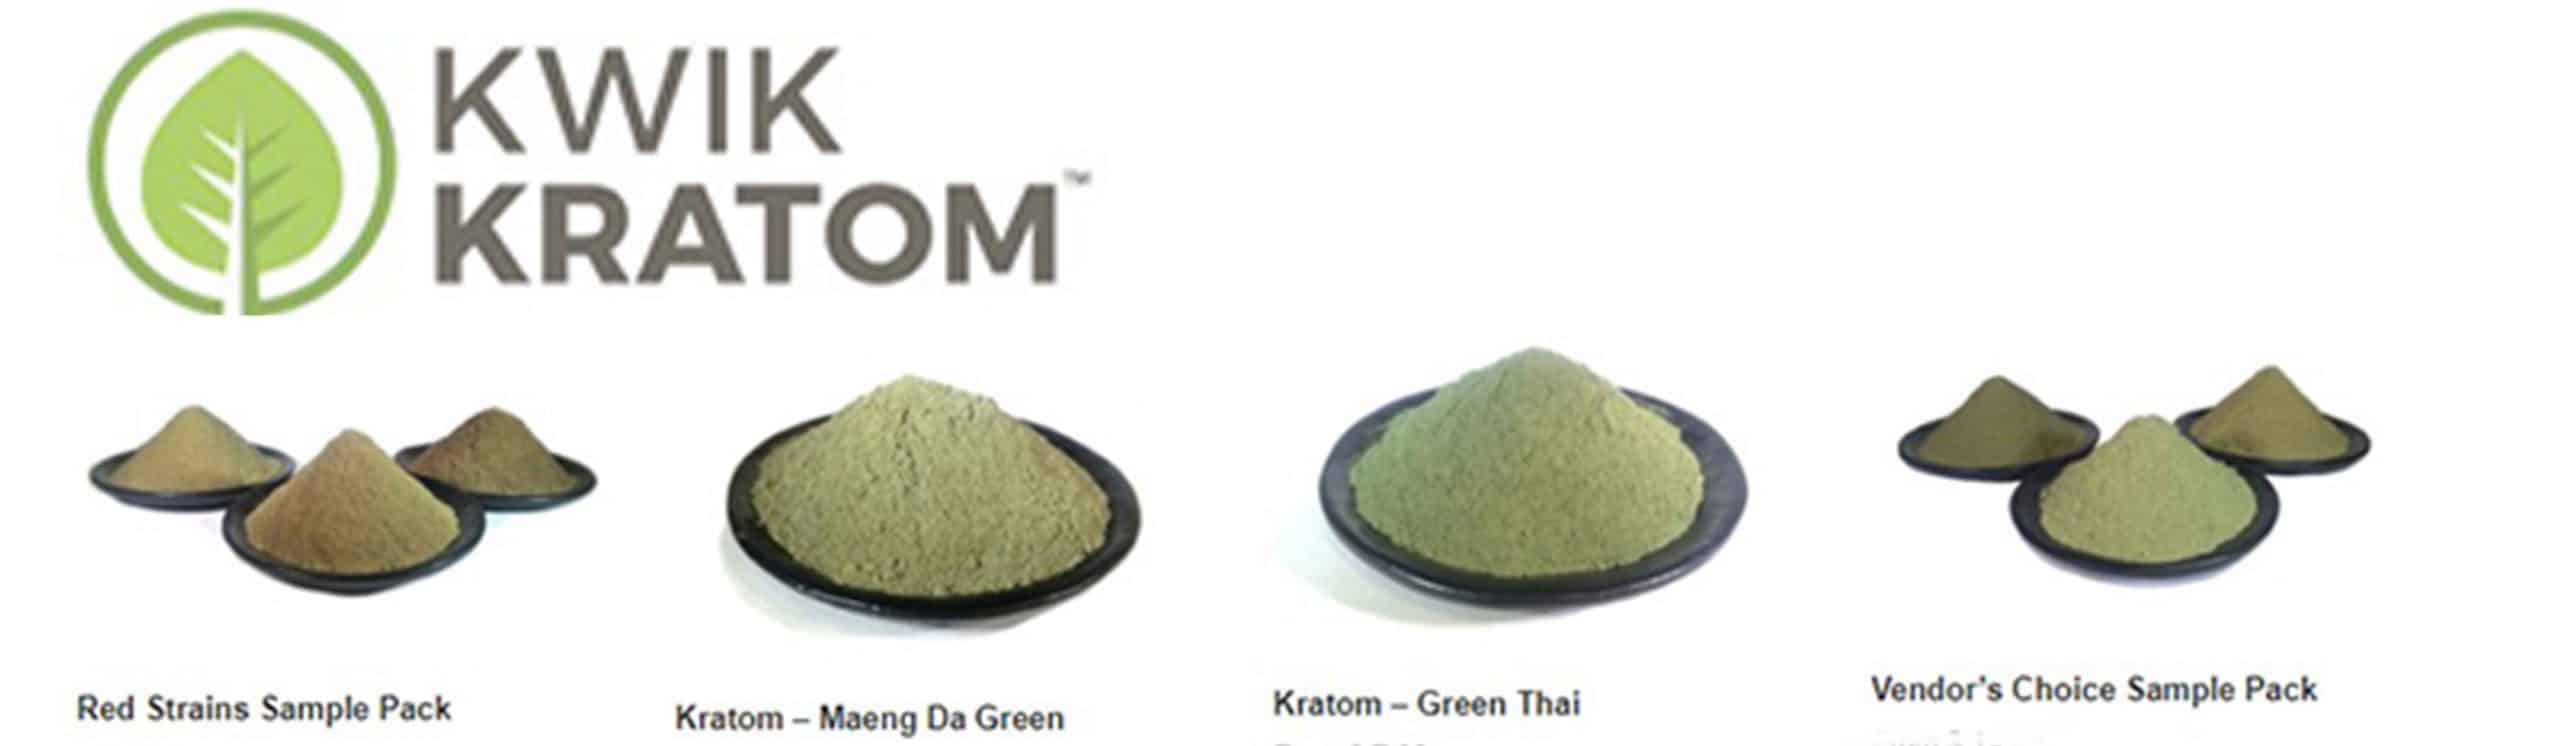 image of kwik kratom products